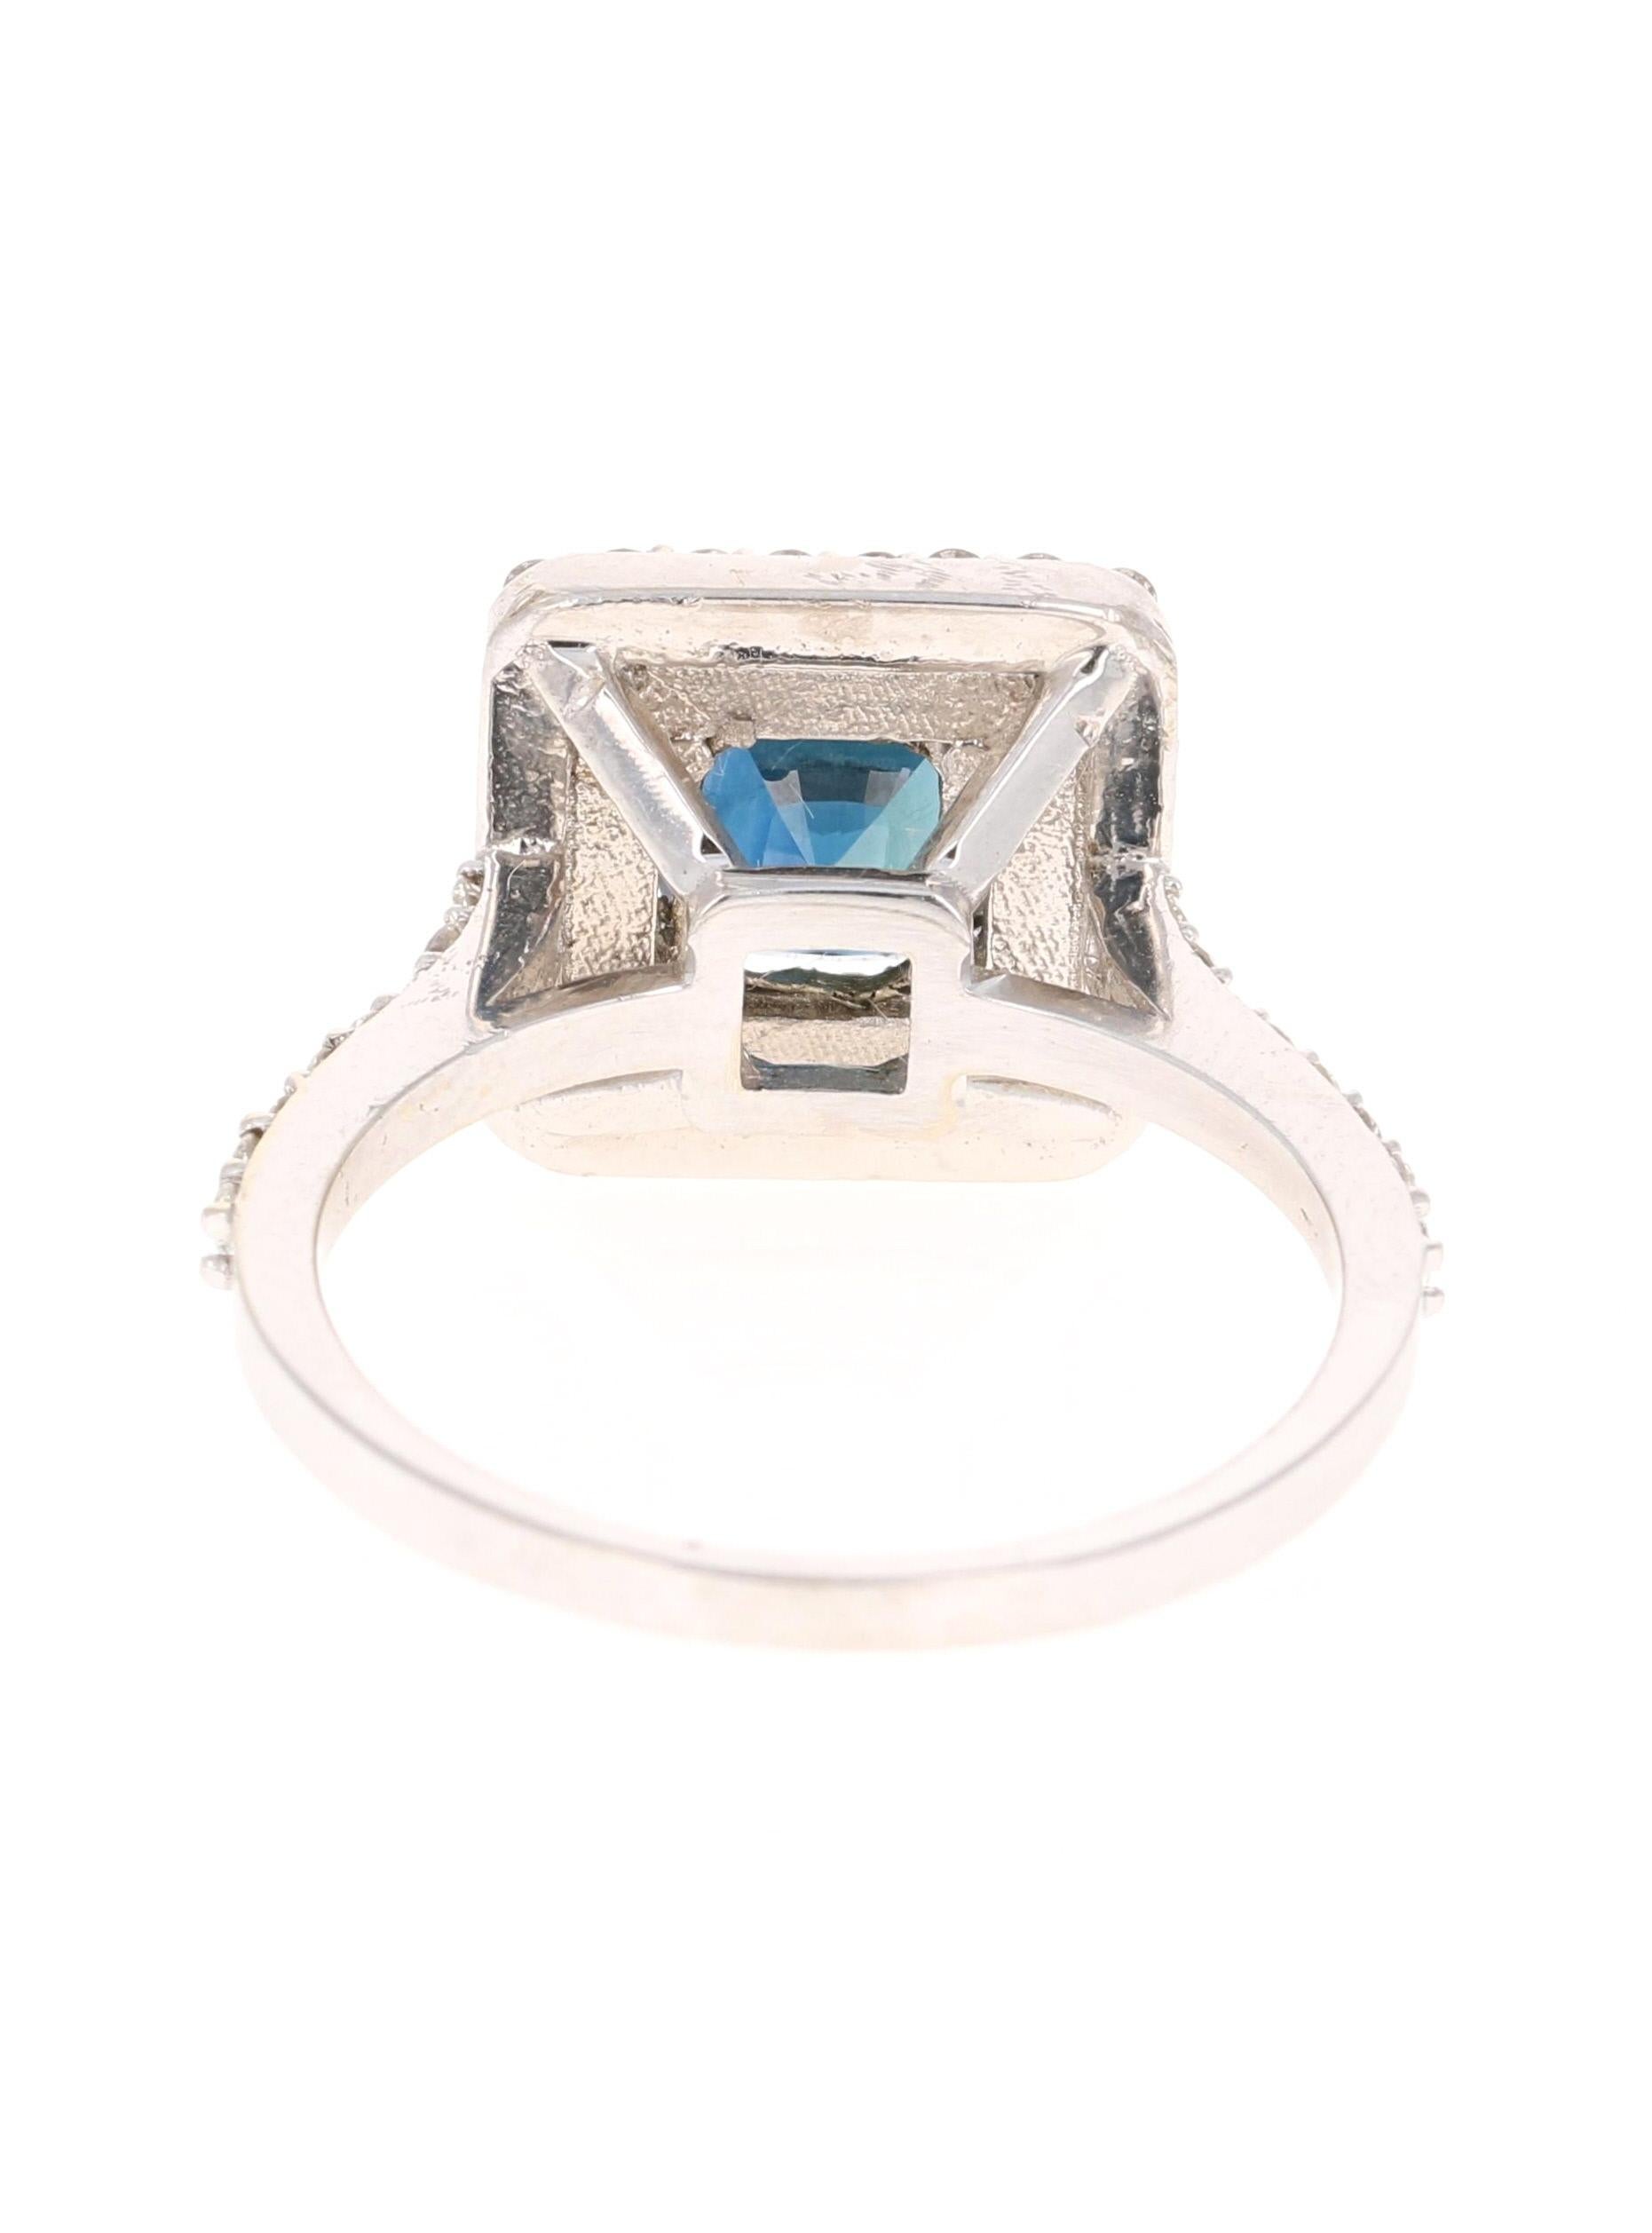 Women's 2.29 Carat Blue Sapphire Diamond Engagement Ring 14 Karat White Gold Ring